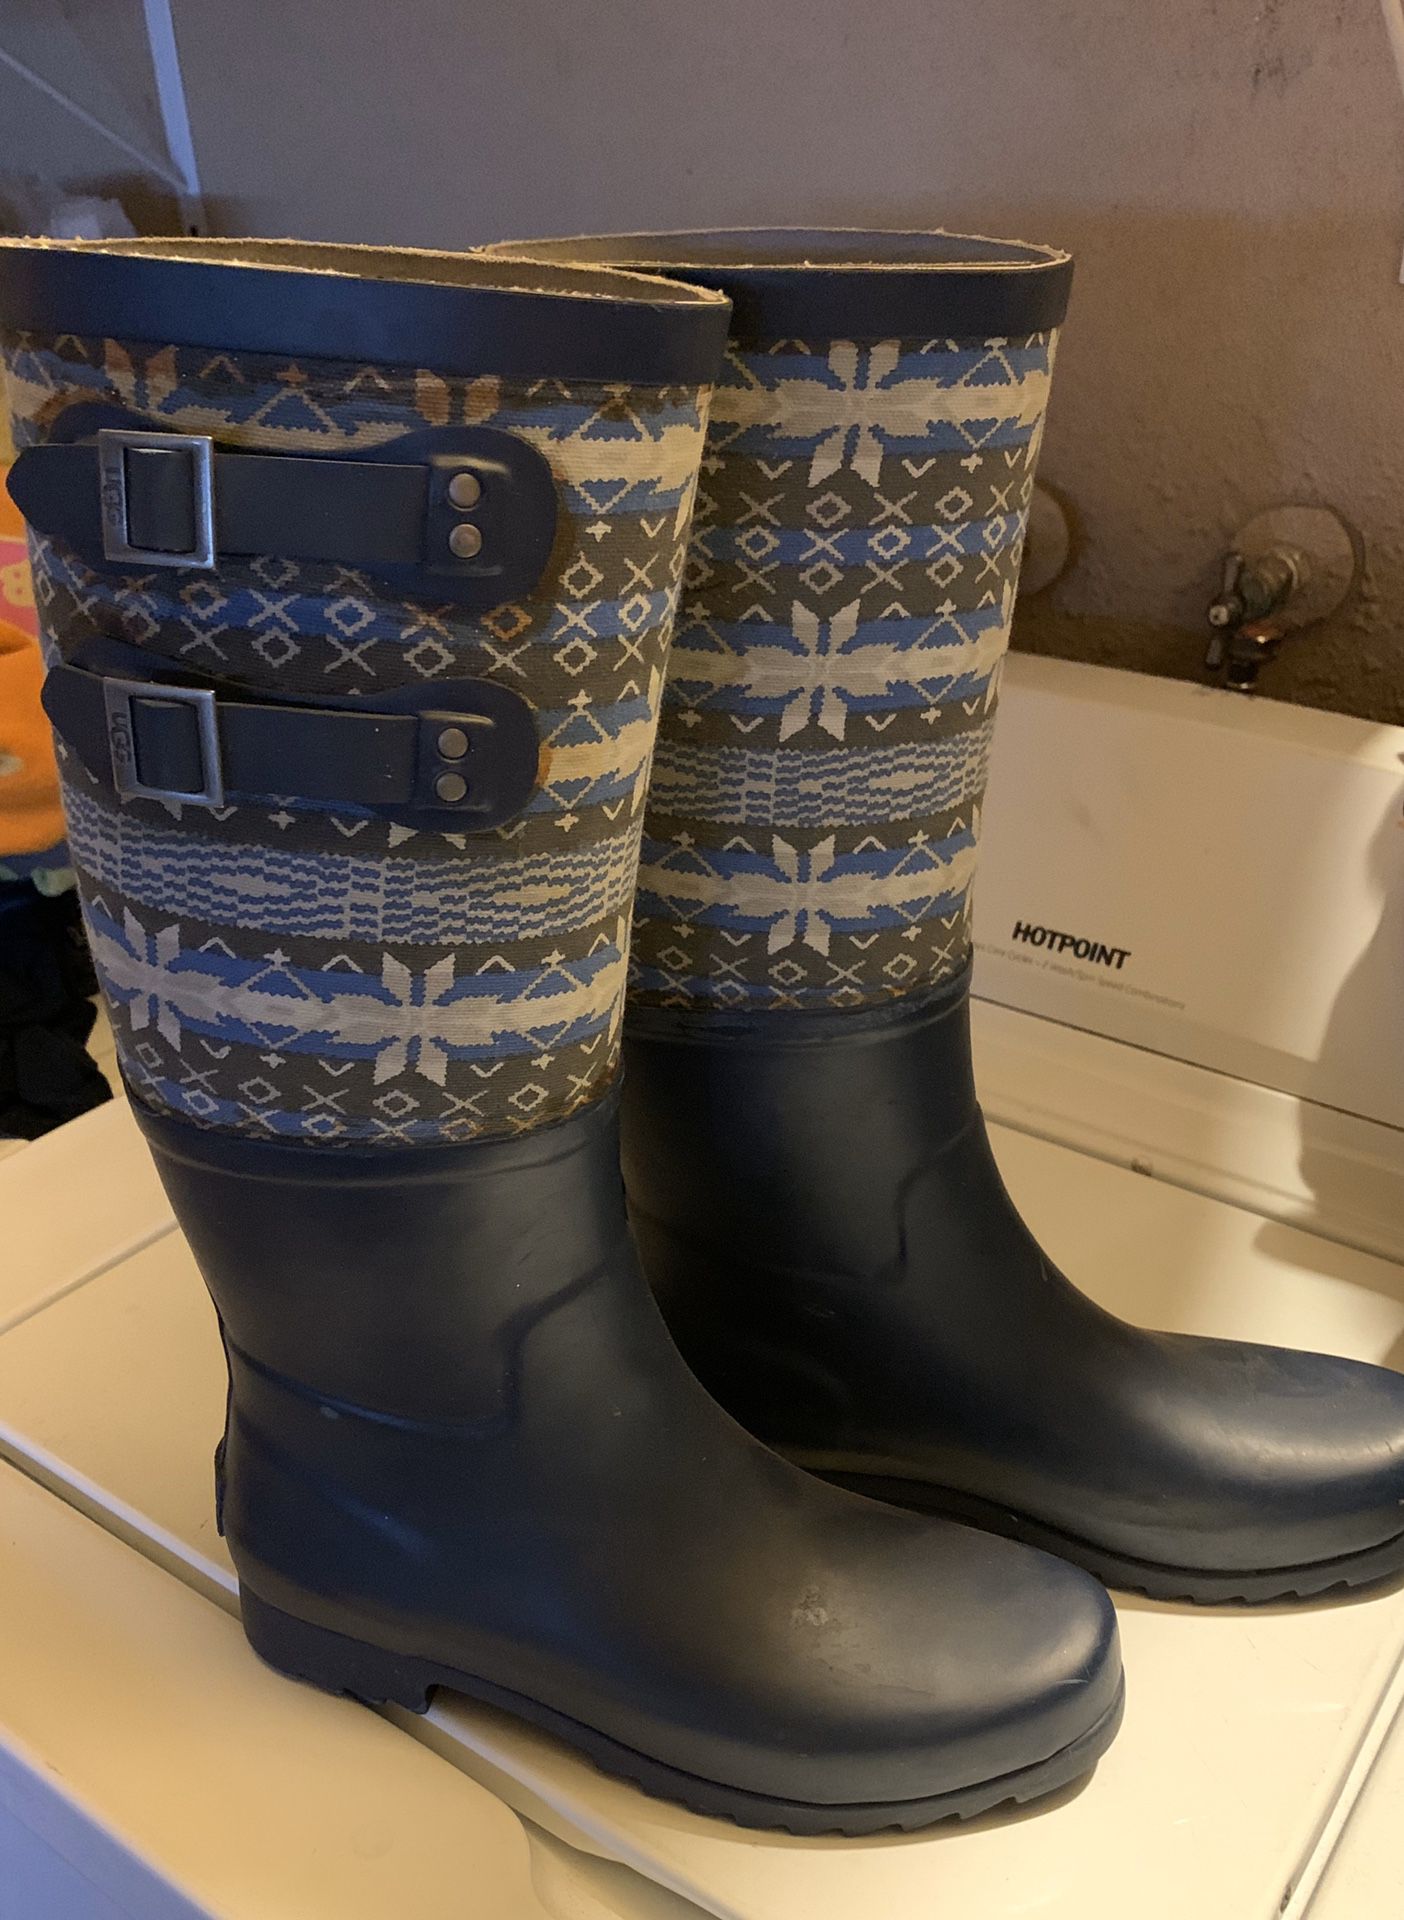 Raining boots UGGs